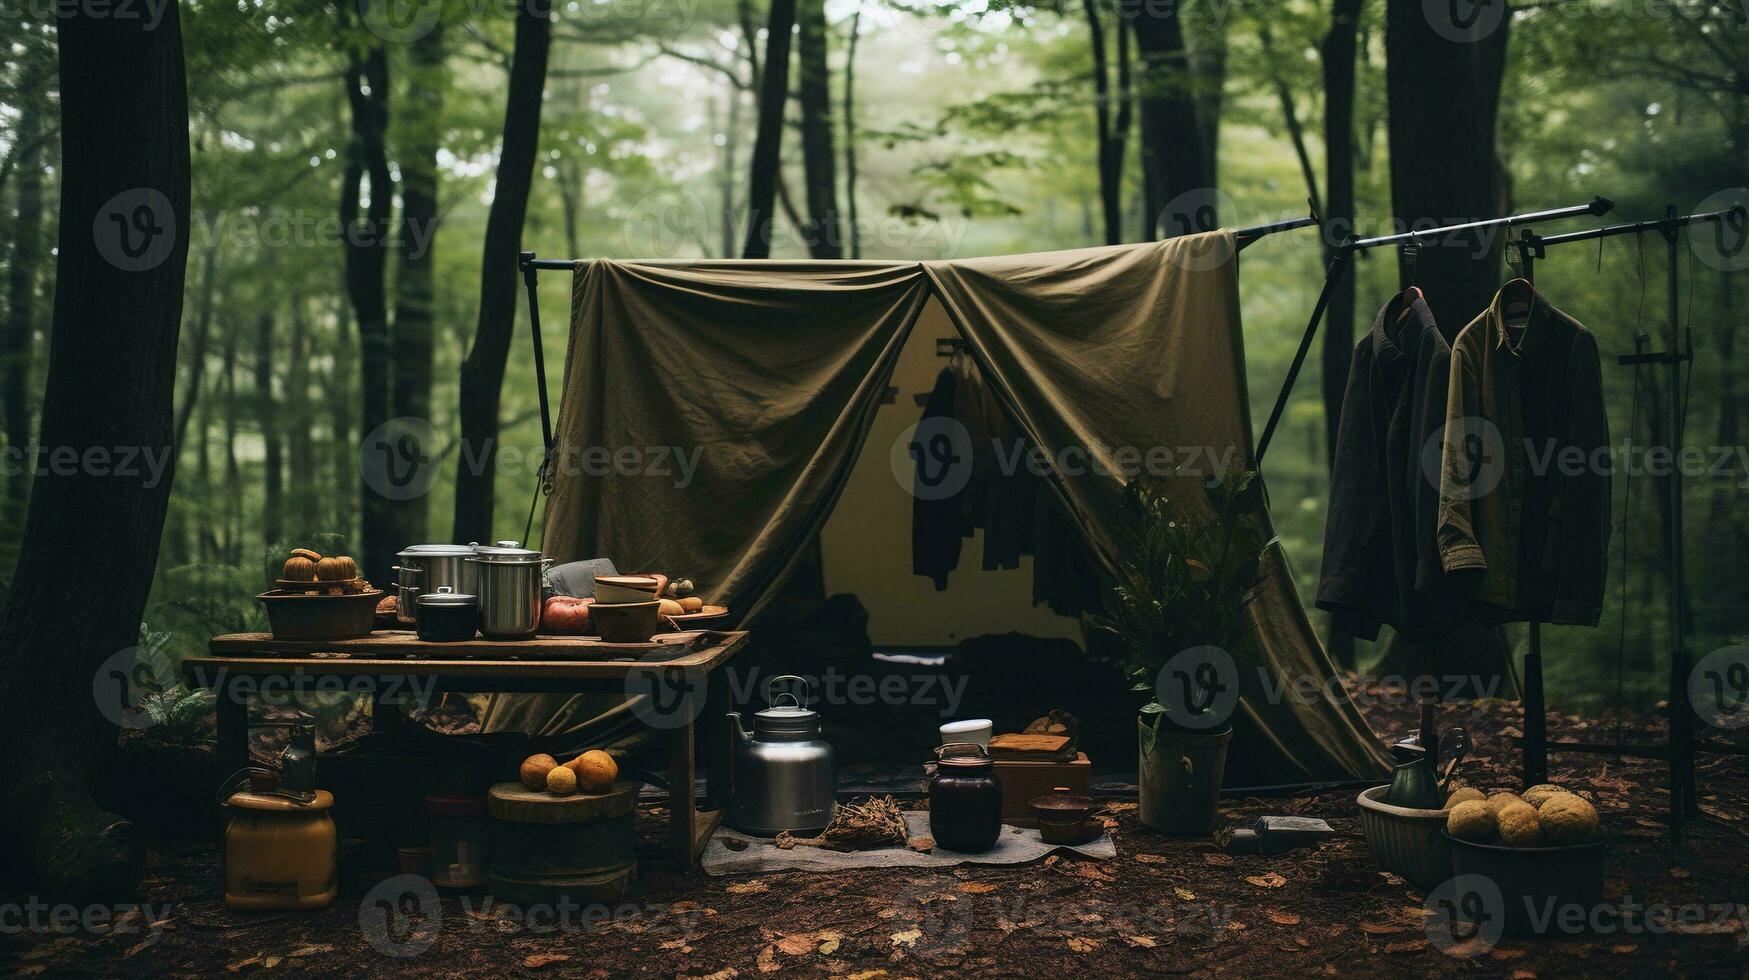 generatief ai, camping buitenshuis concept in neutrale gedempt kleuren, toerist kamp foto